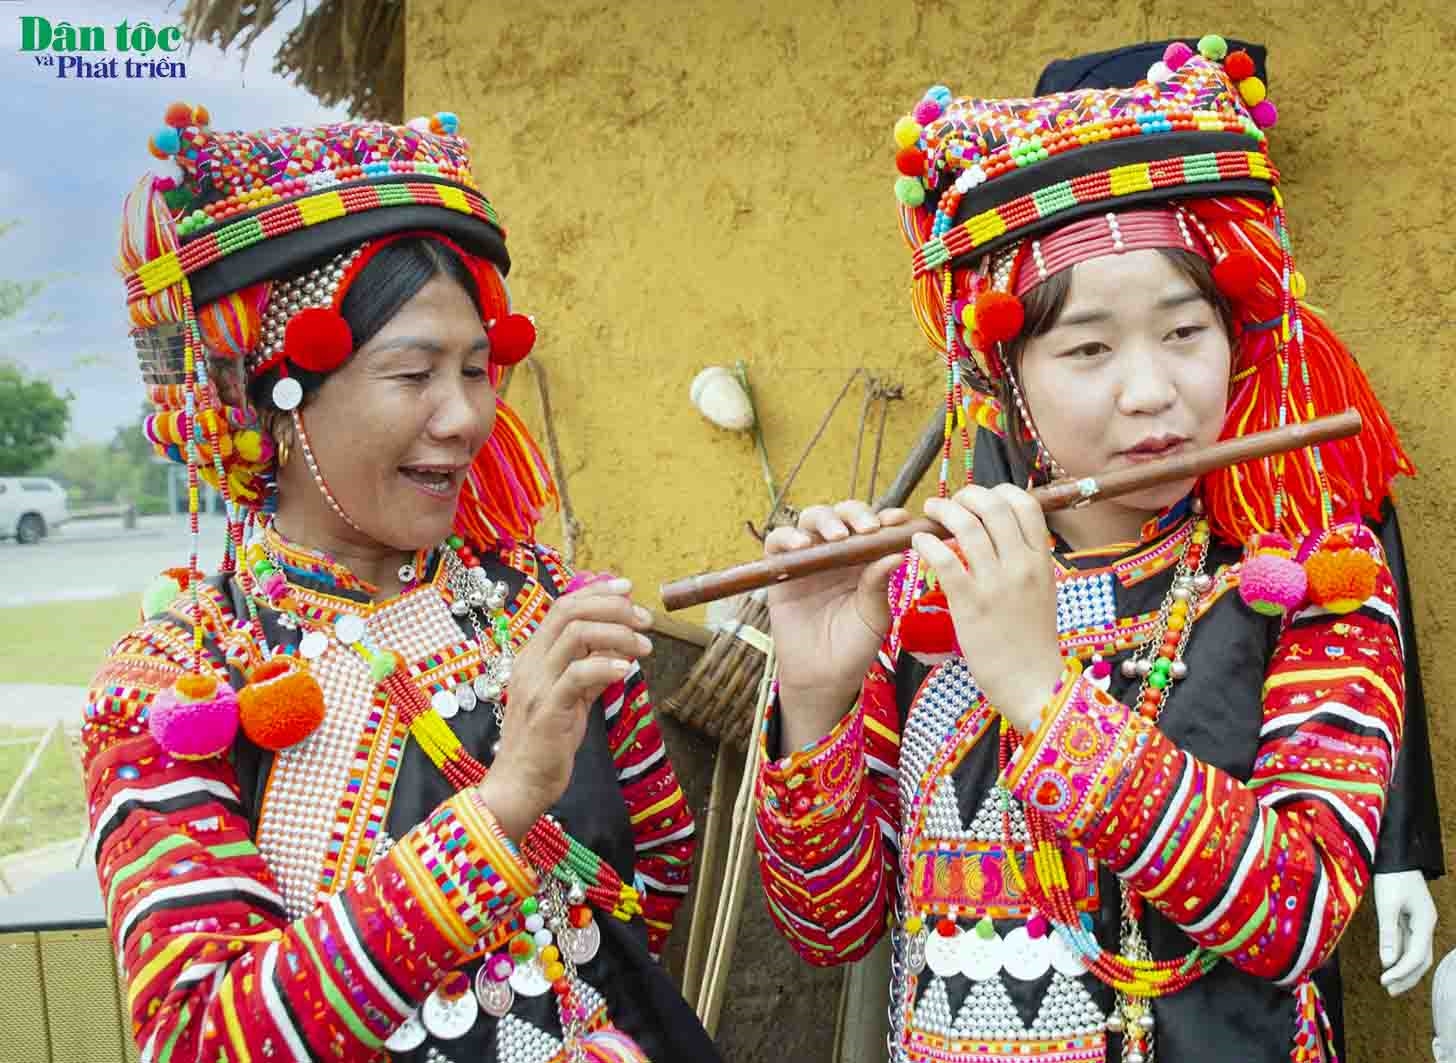 Tiếng sáo trúc của cô gái Hà Nhì như mời gọi các trai bản về lễ hội